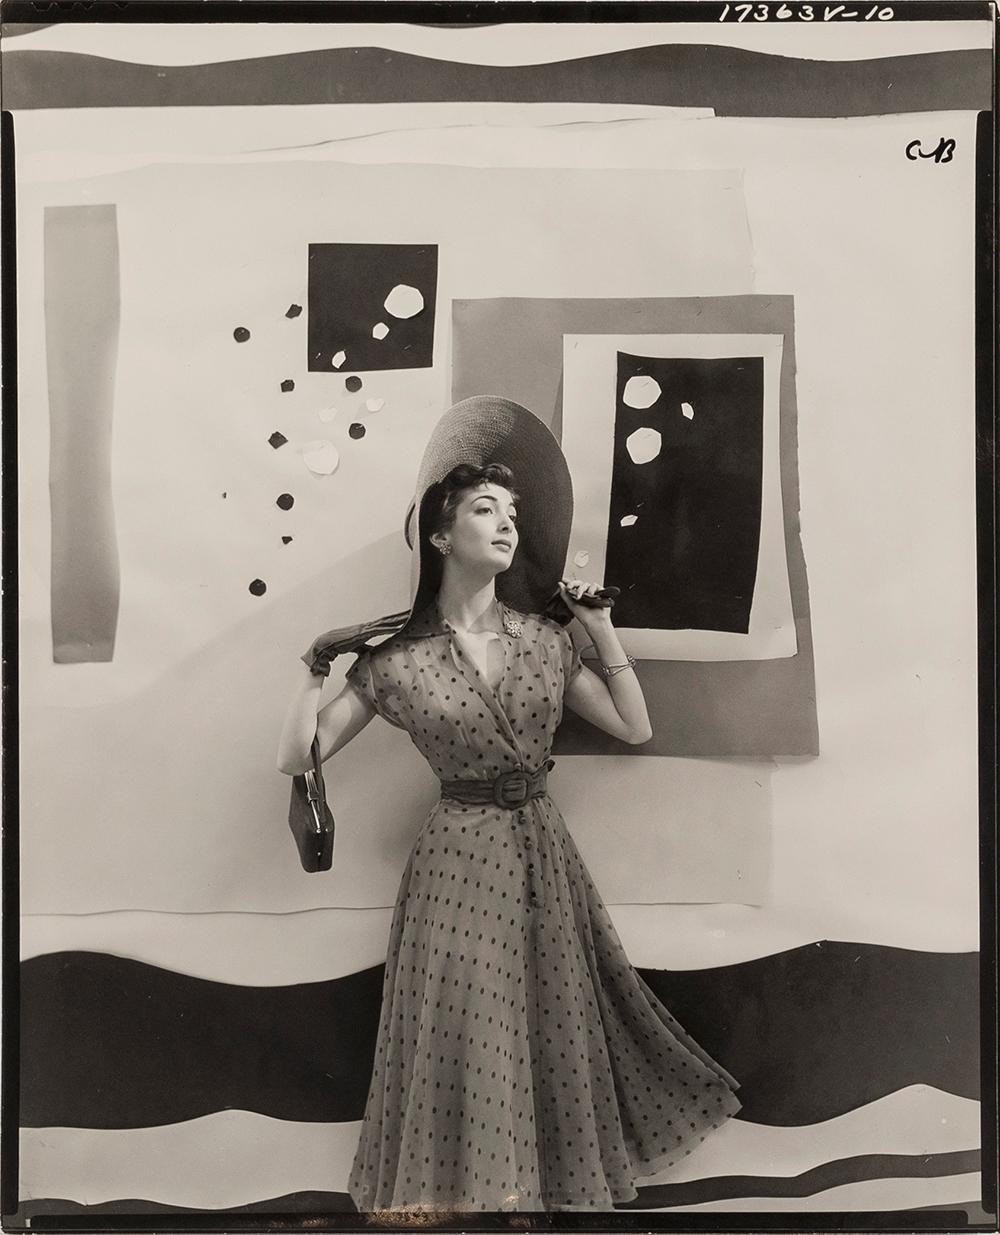 Carmen Dell'Orefice avec toile de fond découpée pour " Vogue ", 1949 - Cecil Beaton
Inscrit avec 'CB'
Cachet à l'encre daté Conde Nast et cachets à l'encre du photograveur au verso
Tirage à la gélatine argentique, imprimé en 1949
9 3/4 x 7 3/4